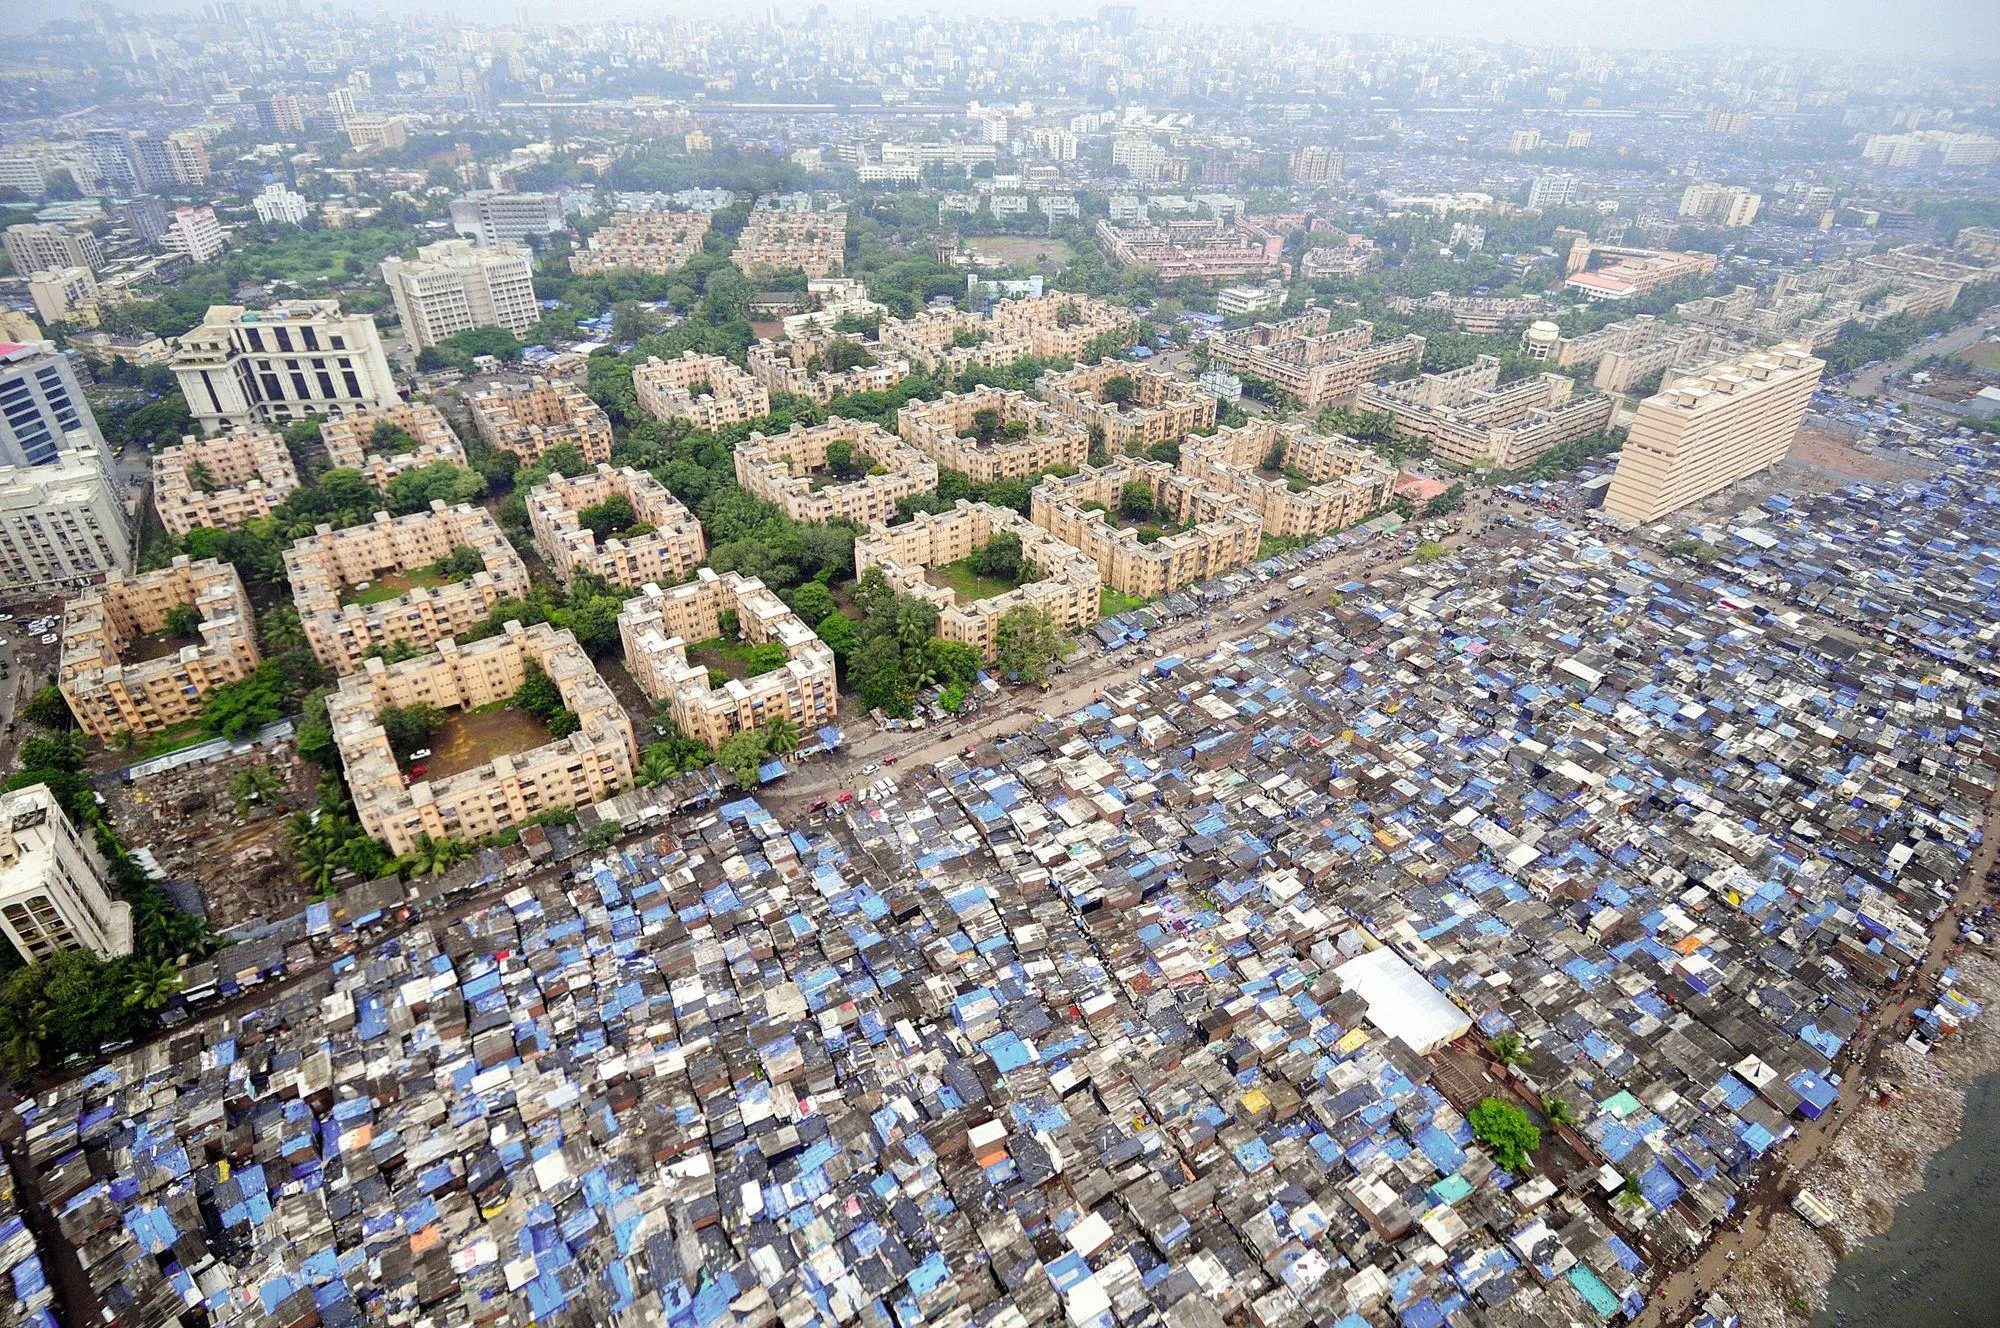 Des inégalités visibles dans le paysage de Mumbai